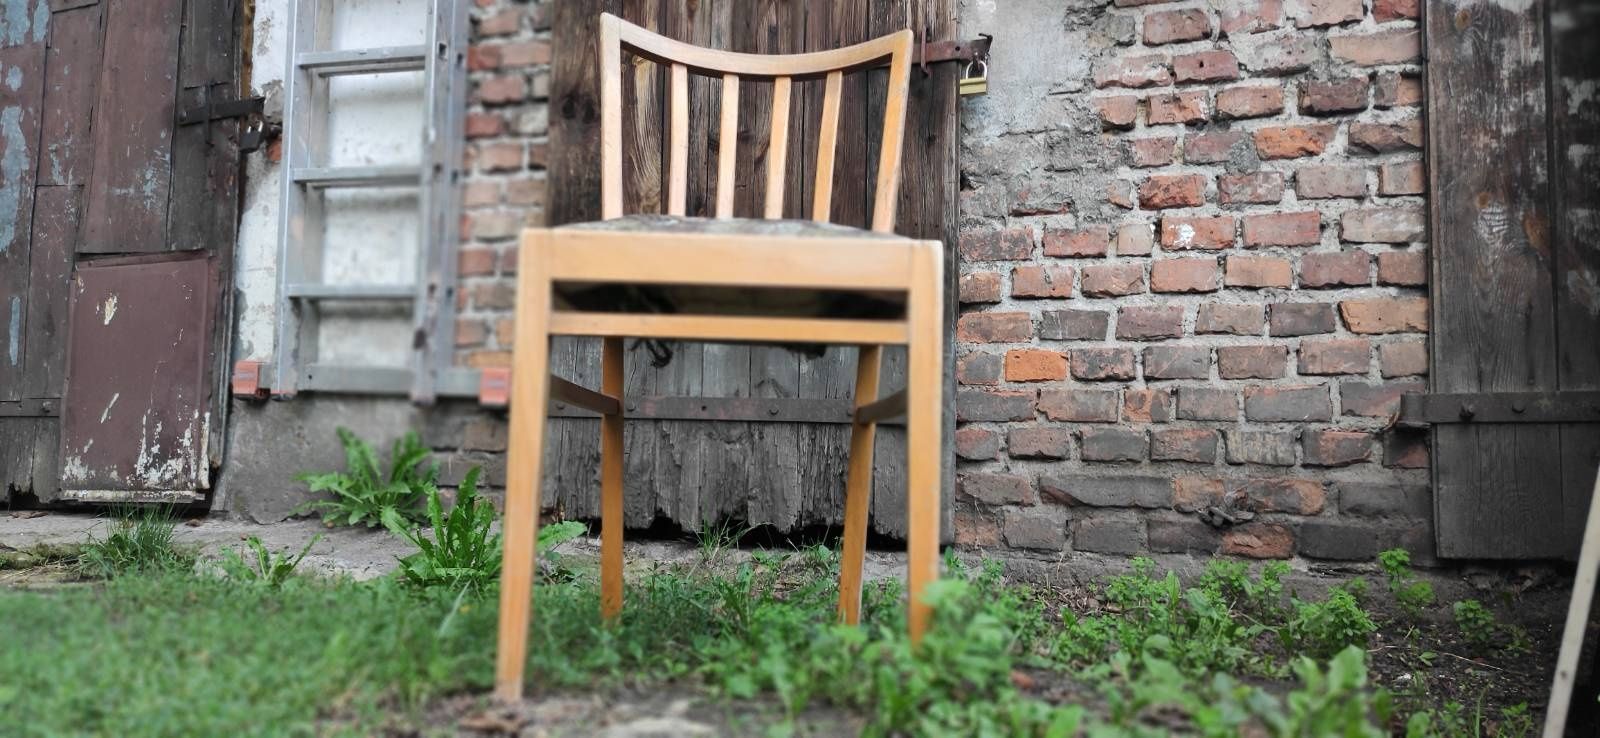 Krzesło - Gościcińska Fabryka Mebli - lata 40

Vintage PRL